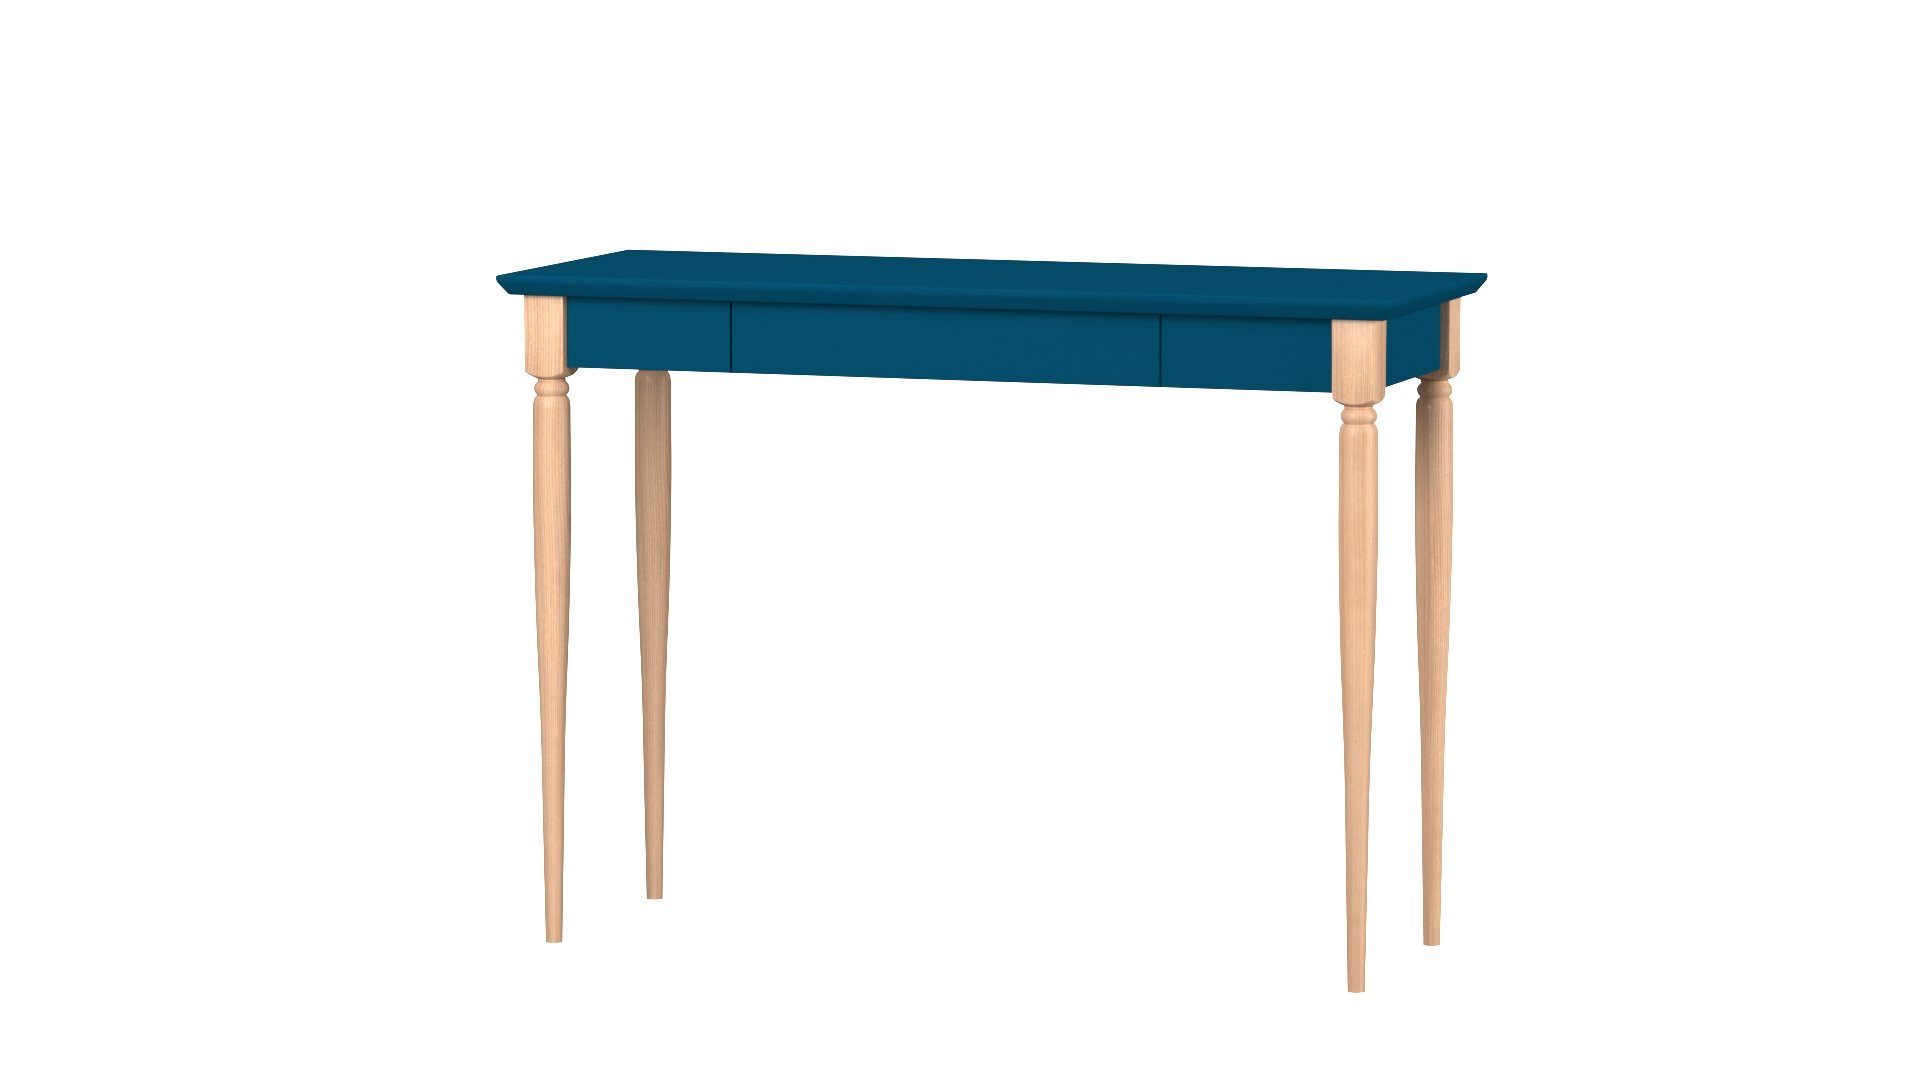 Siblo Schreibtisch Kinderschreibtisch Louis mit Schublade - Moderner Schreibtisch - minimalistisches Design - Kinderzimmer - Jugendzimmer - MDF-Platte - Buchenholz (Kinderschreibtisch Louis mit Schublade) Blau